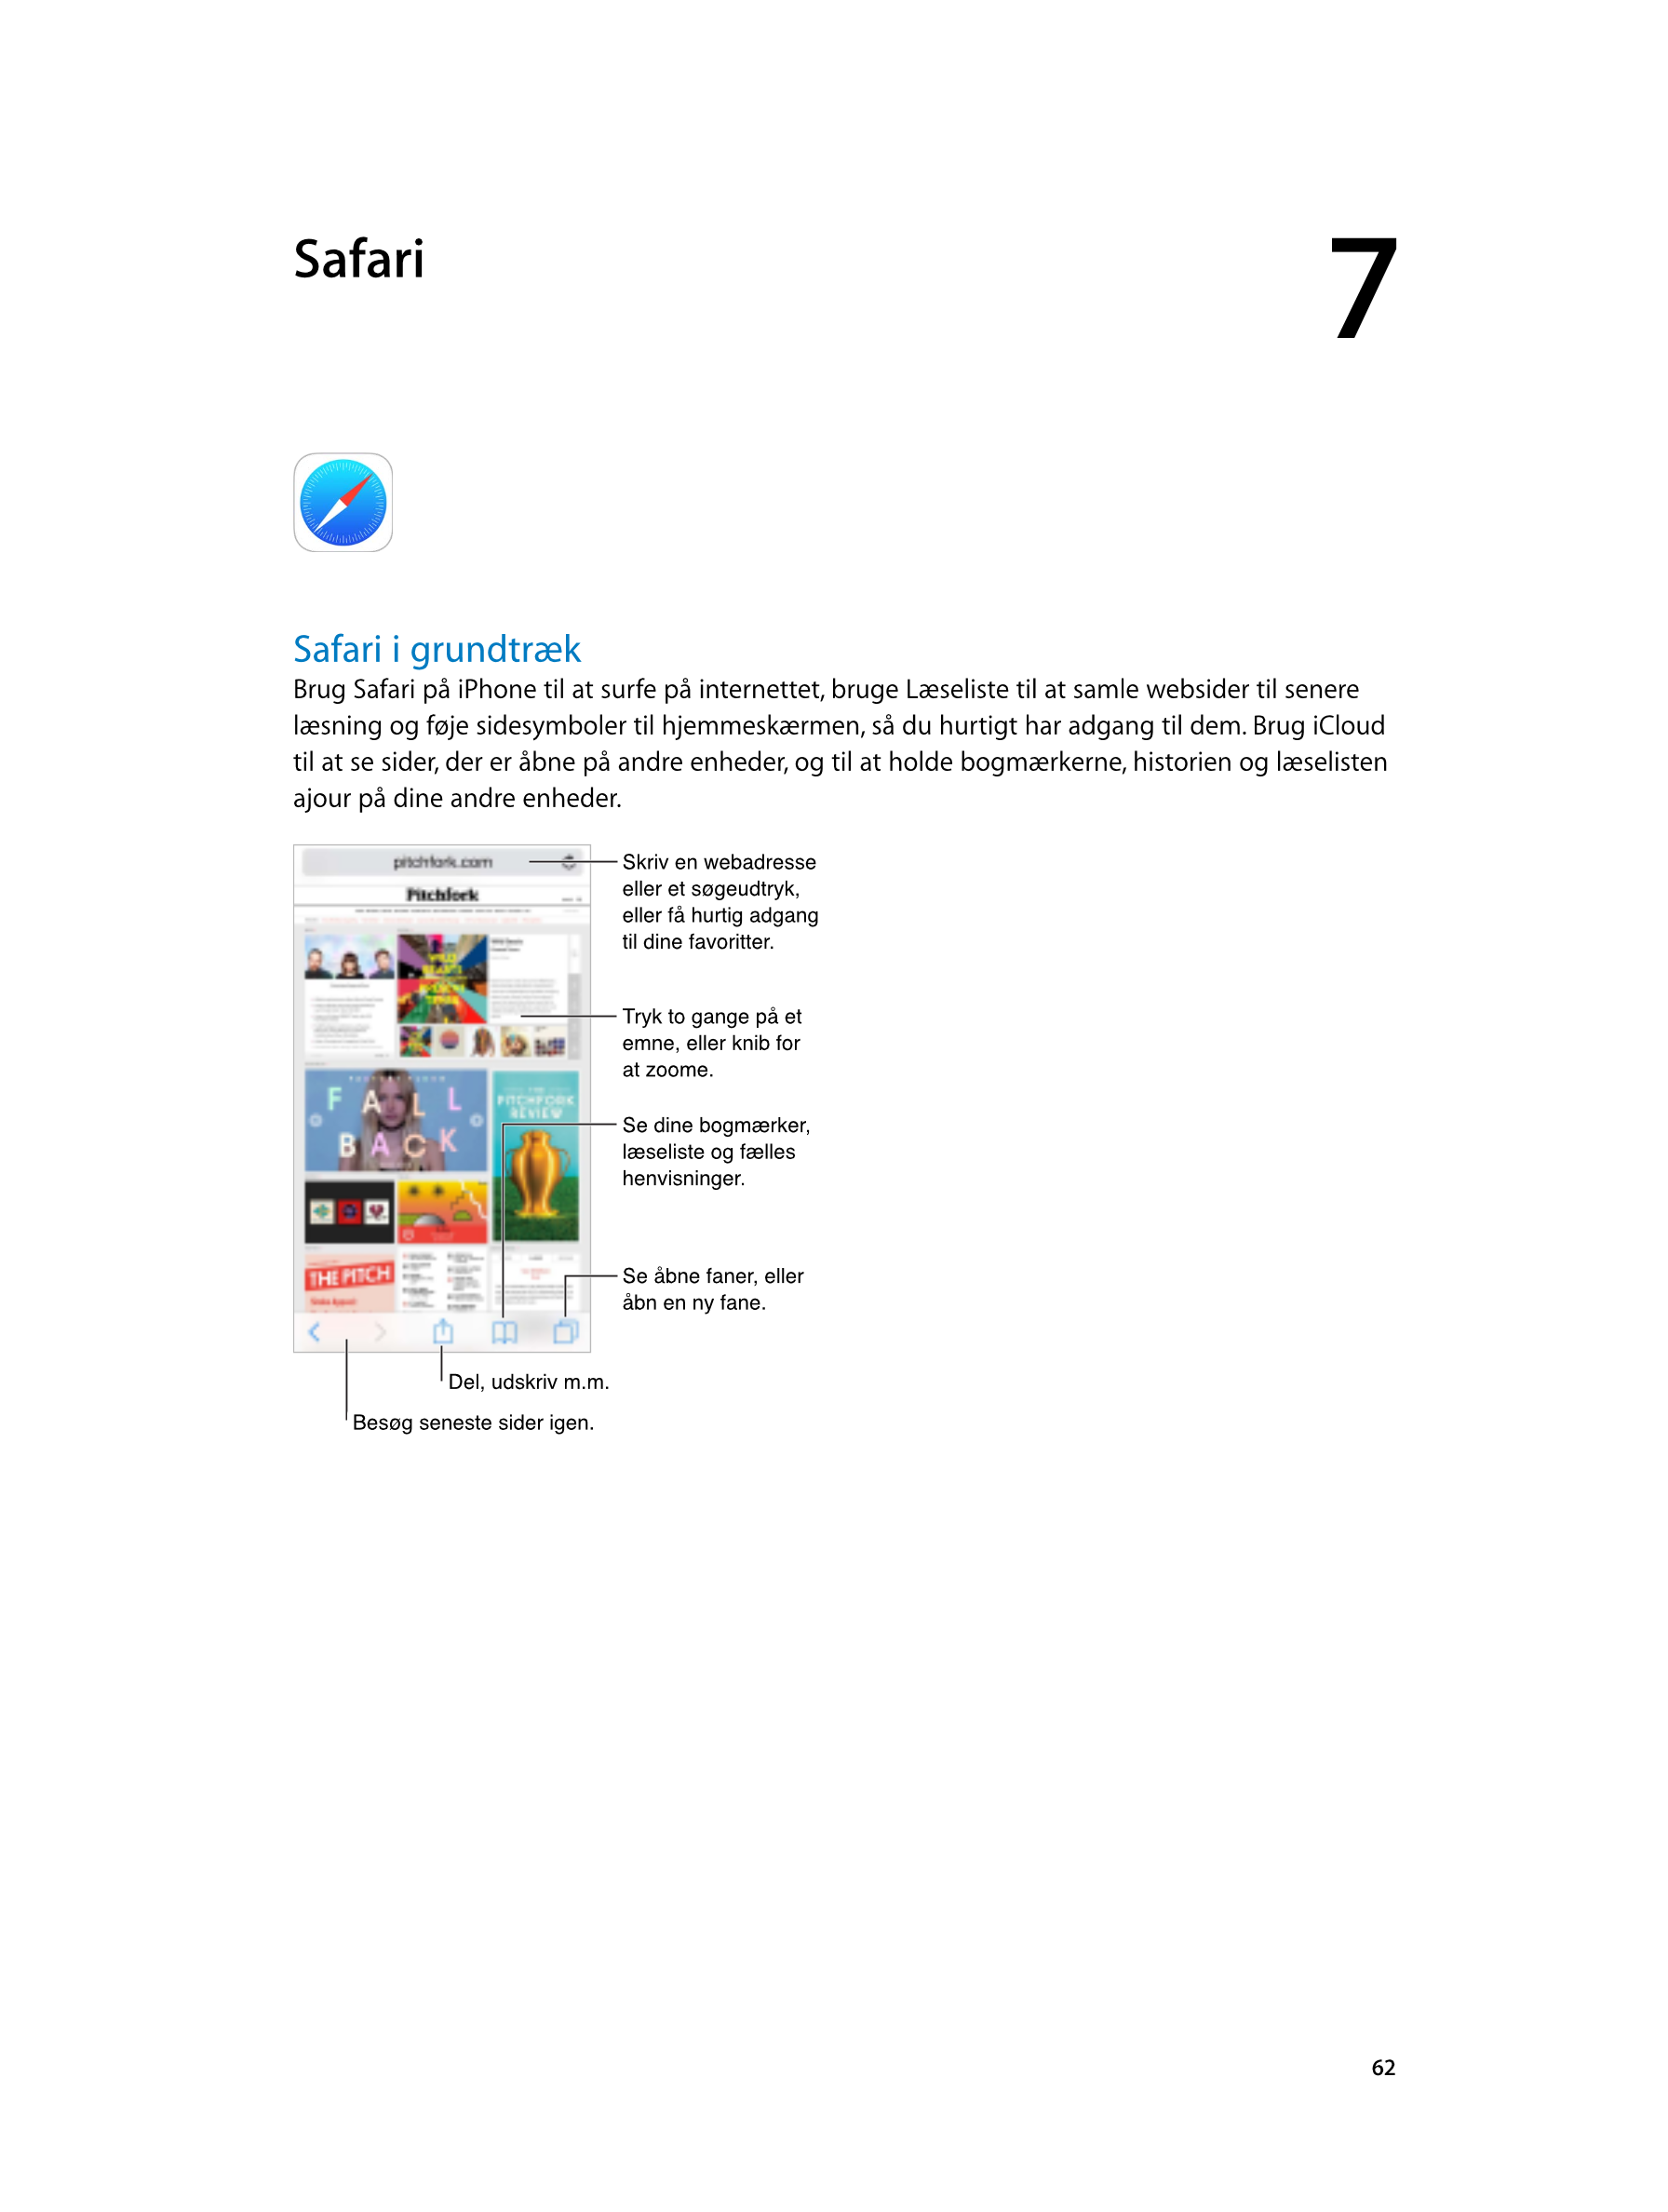   Safari 7
Safari i grundtræk
Brug Safari på iPhone til at surfe på internettet, bruge Læseliste til at samle websider til sener